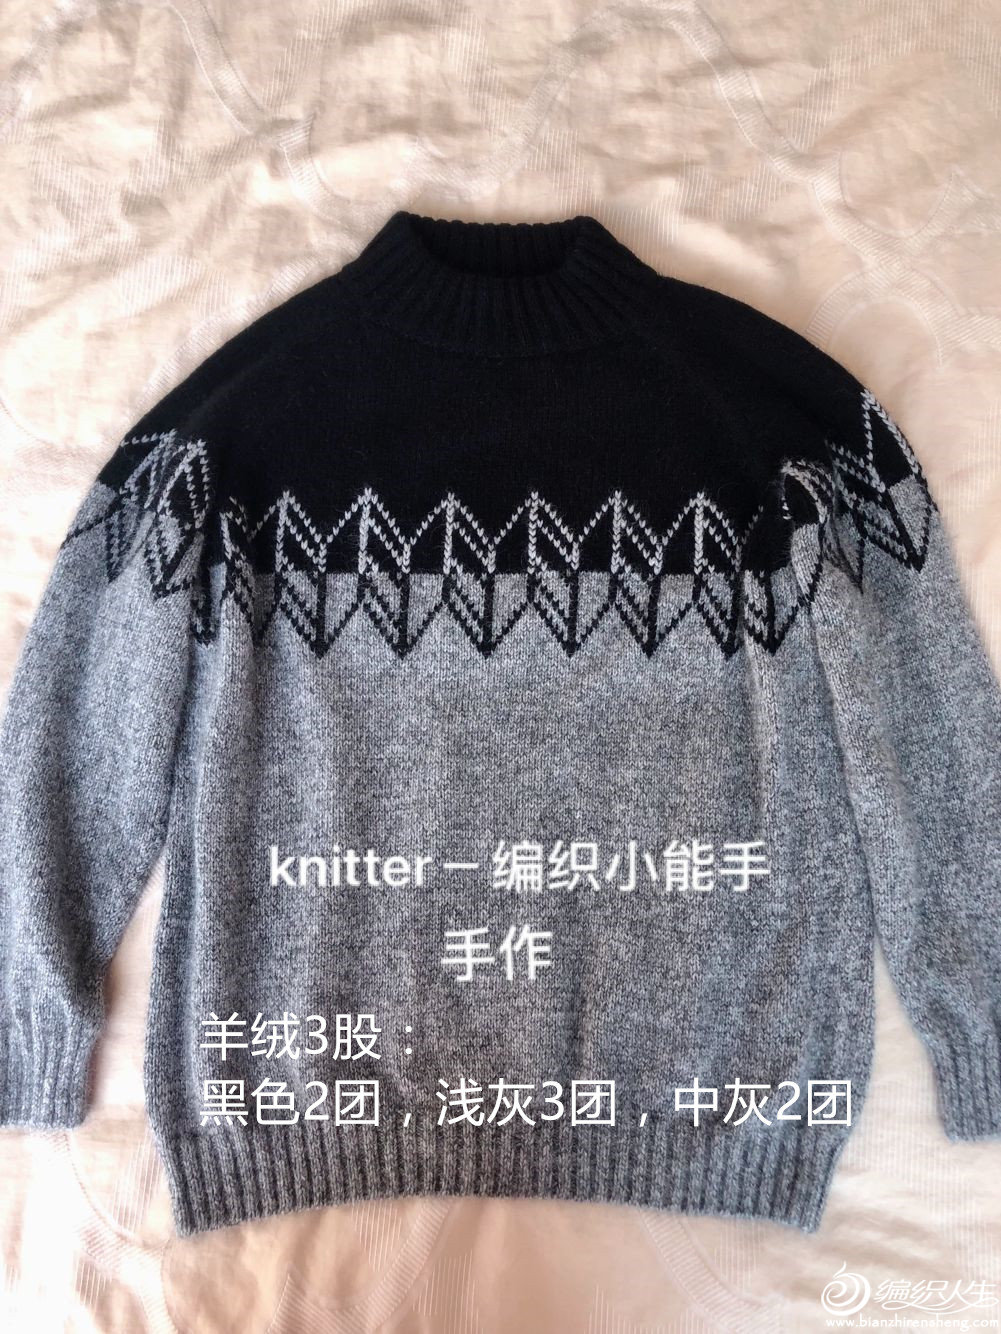 knitter-֯С.jpg